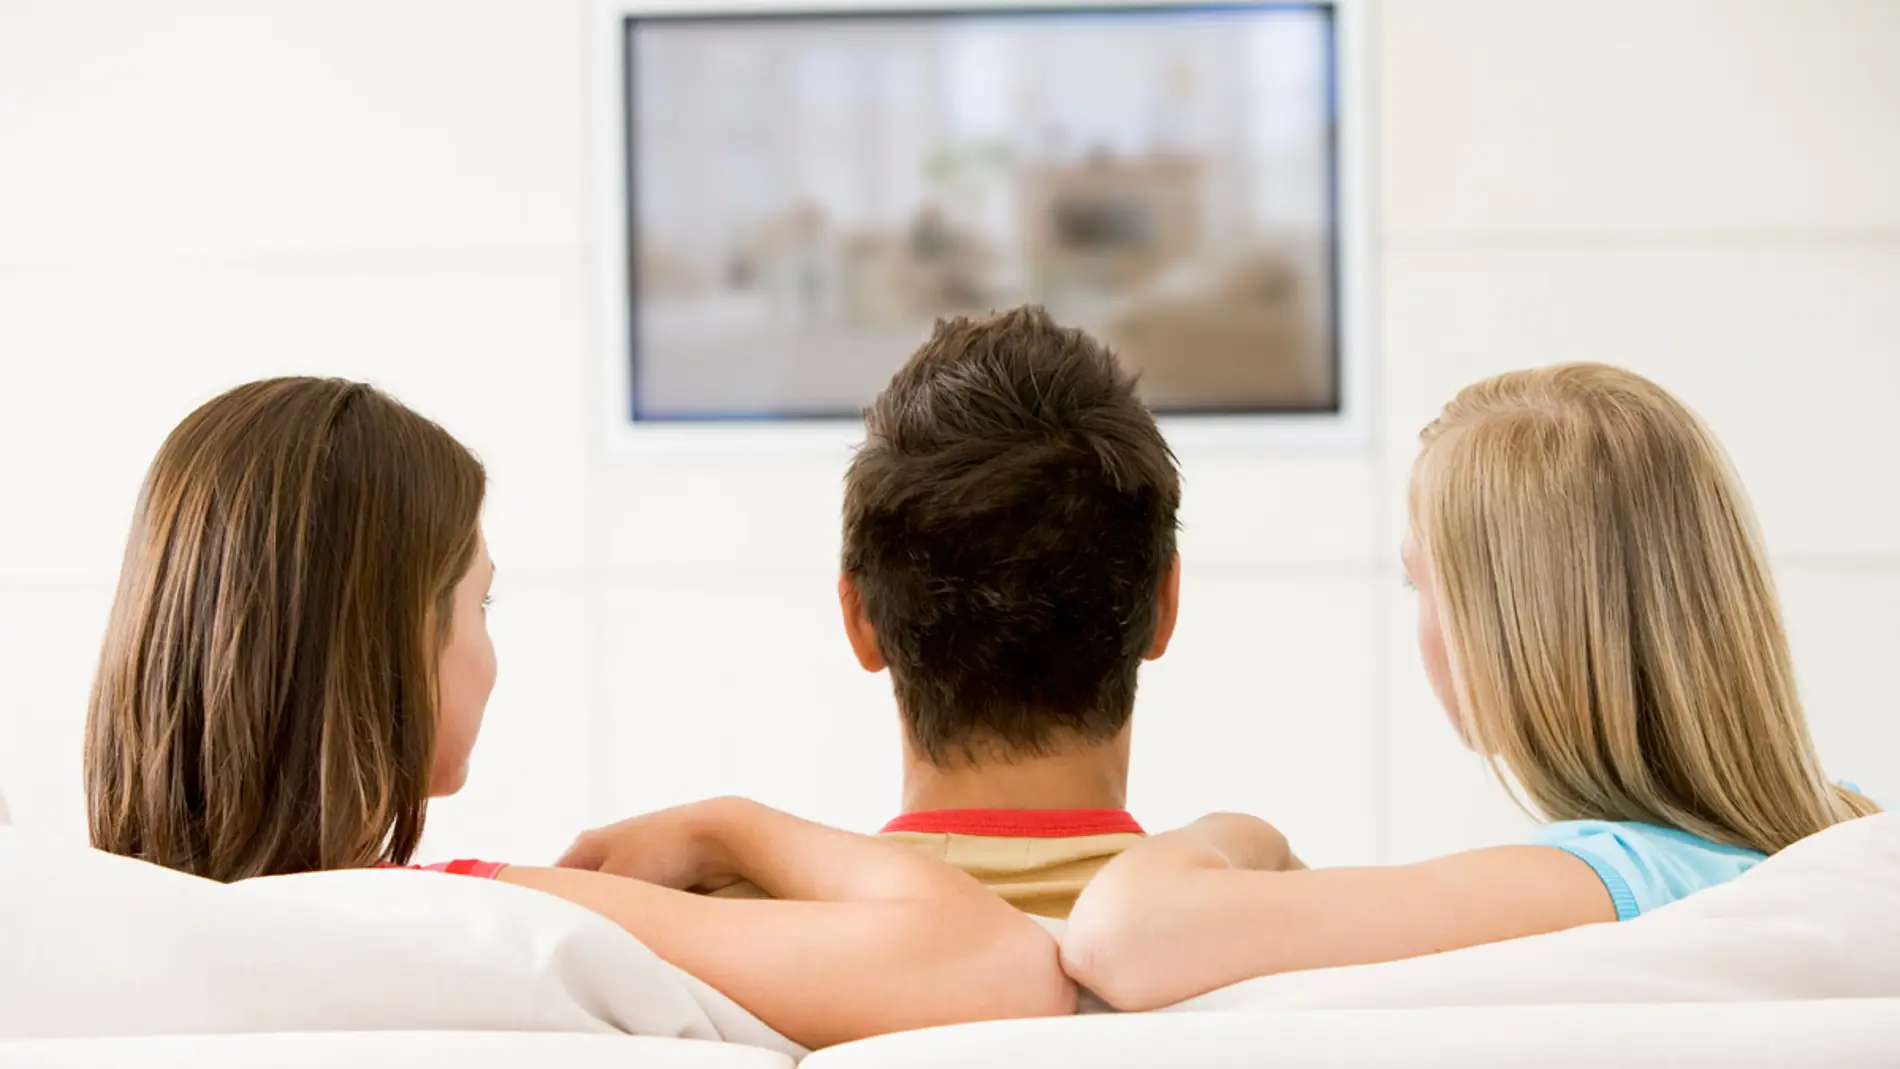 El neuromarketing permite evaluar las emociones frente a la publicidad en TV